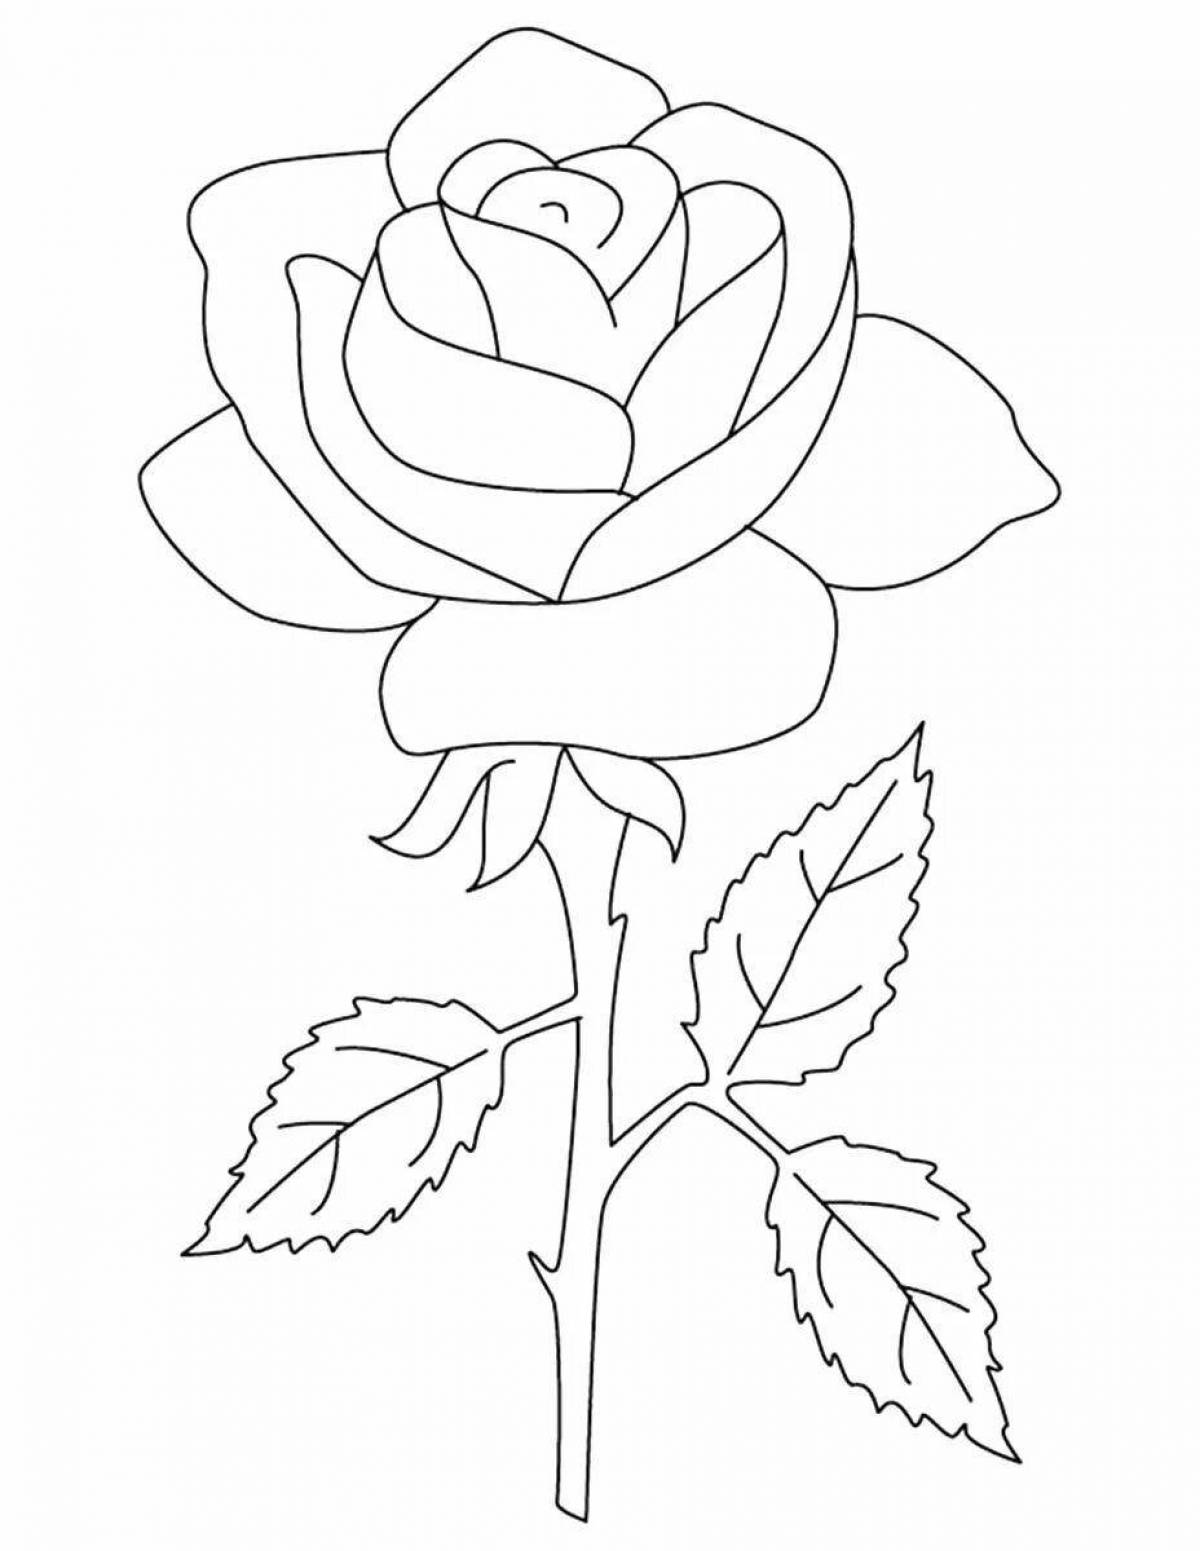 Красочная раскраска розы для детей 5-6 лет